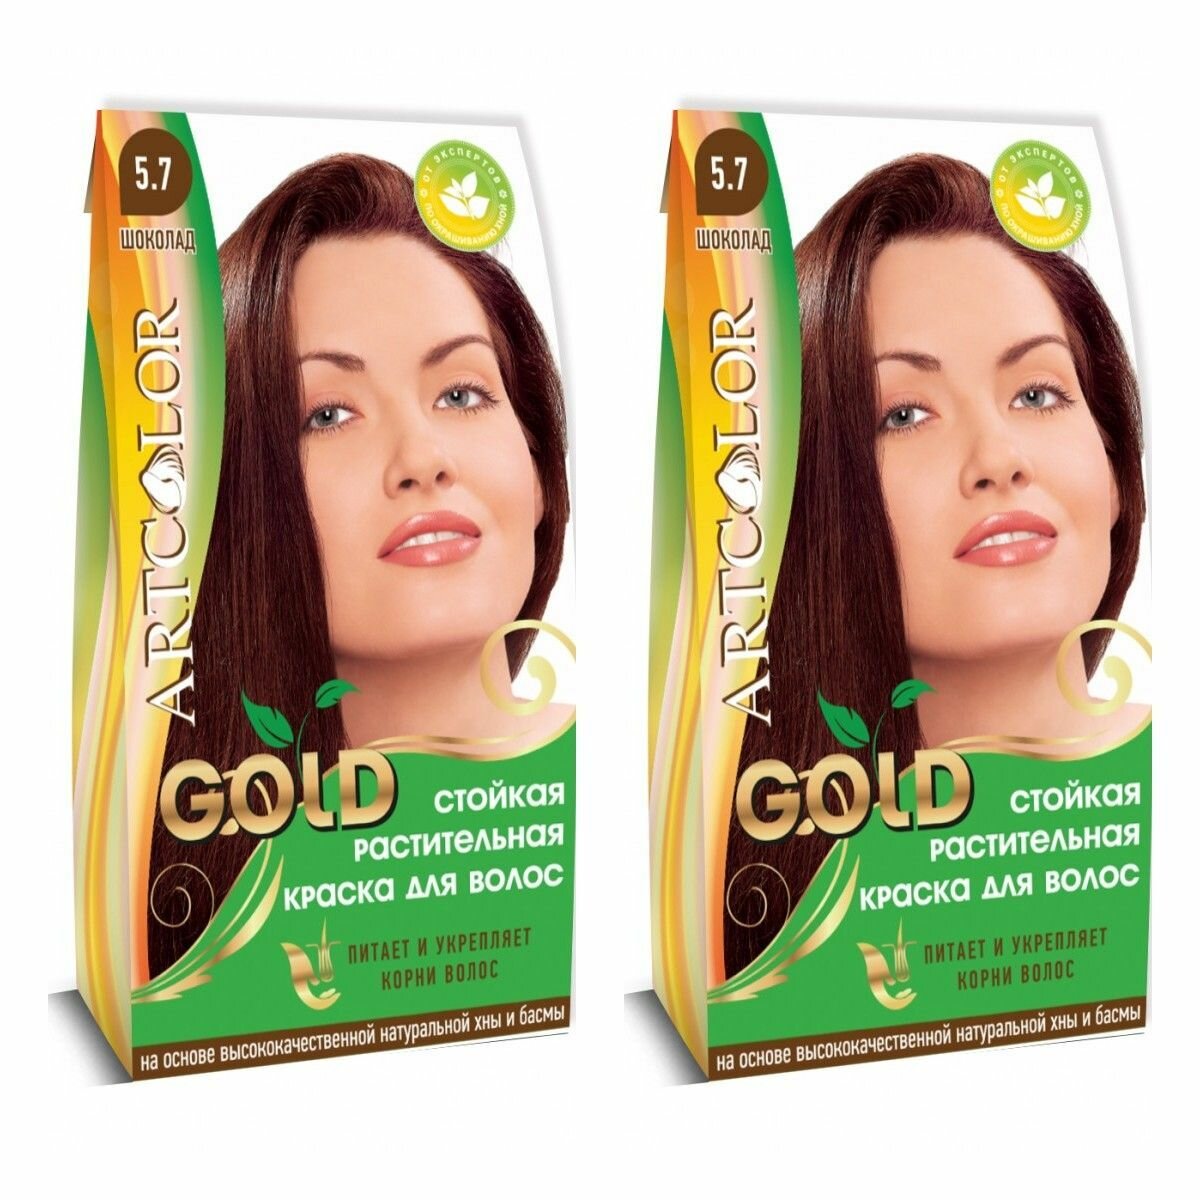 Артколор Растительная краска для волос Gold, тон Шоколад, 25 гр, 2 штуки